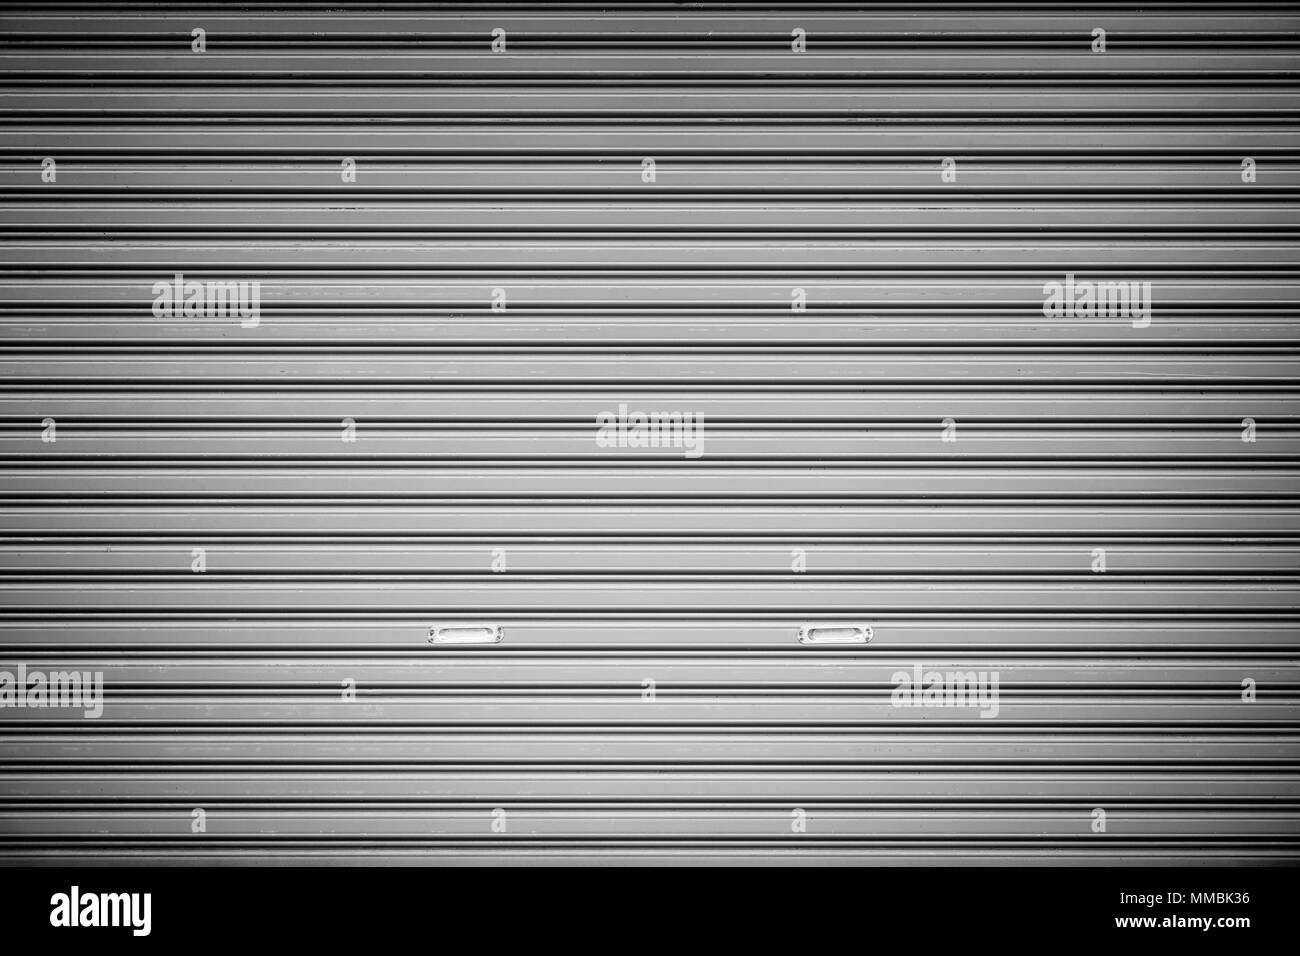 Full Frame Hintergrund eines geschlossenen Rolltor (oder Rolltore,  Sektionaltore Sektionaltor, Rollen oder Walzen Garagentor) in Schwarz und  Weiß Stockfotografie - Alamy